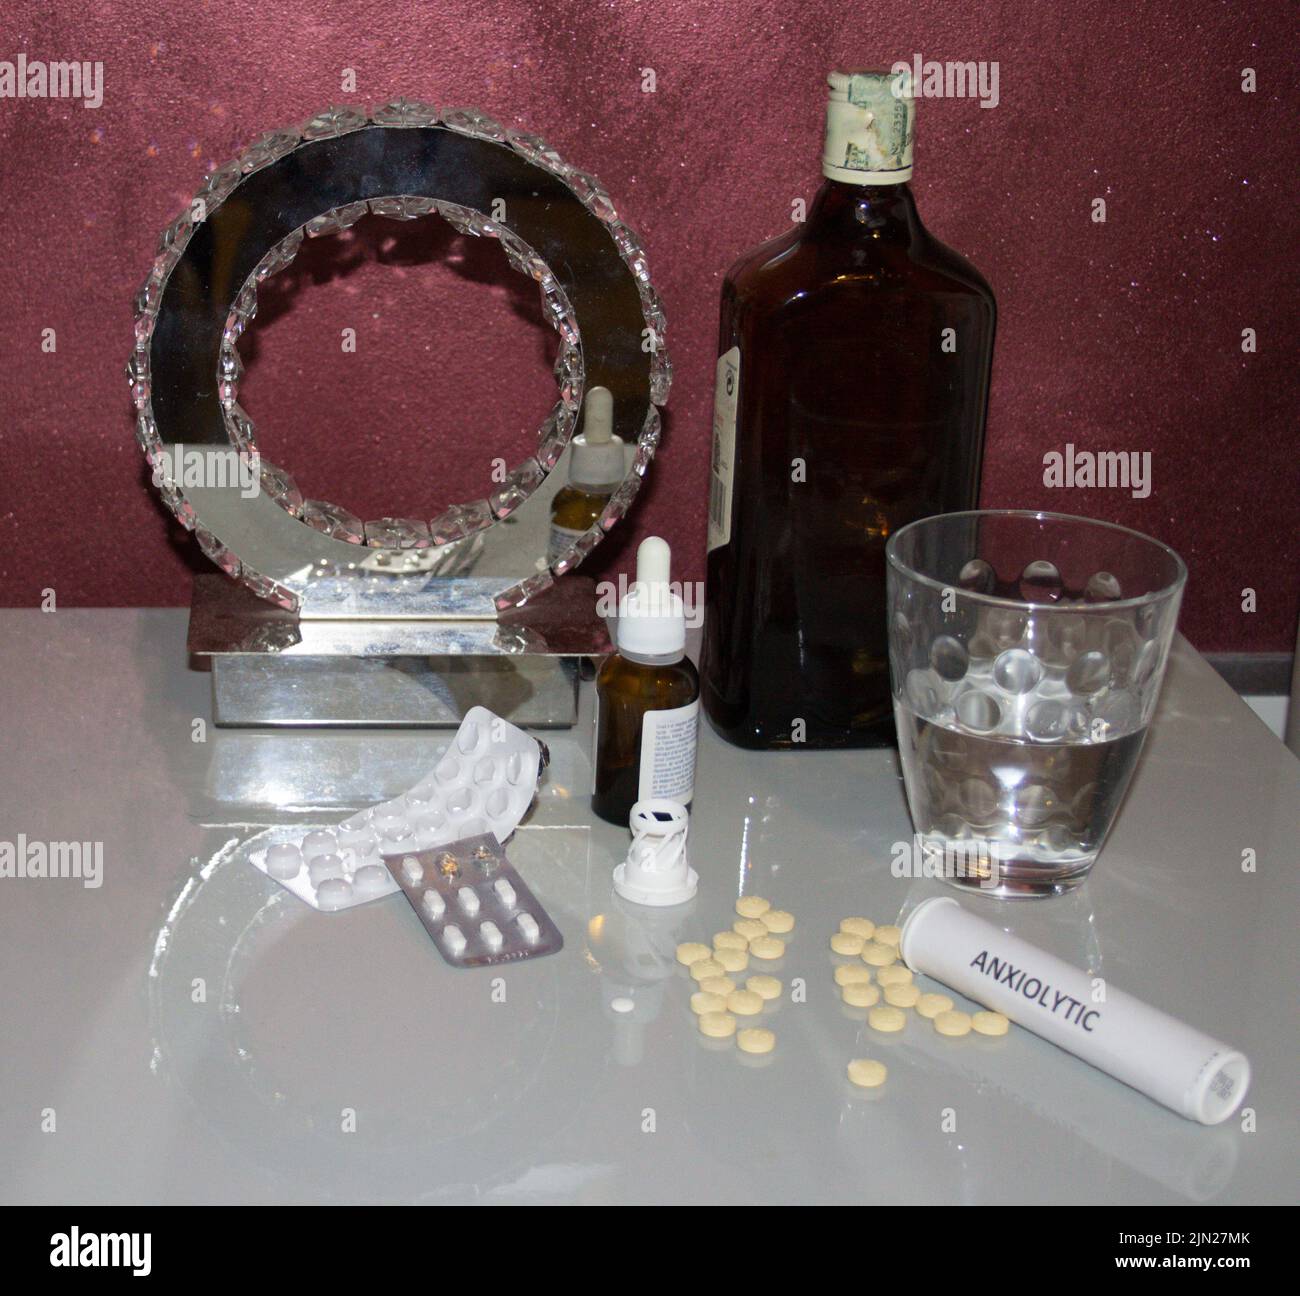 Image d'une table de chevet avec divers médicaments tels que des anxiolytiques et des antidépresseurs, un verre d'eau et une bouteille de whisky. Référence Banque D'Images